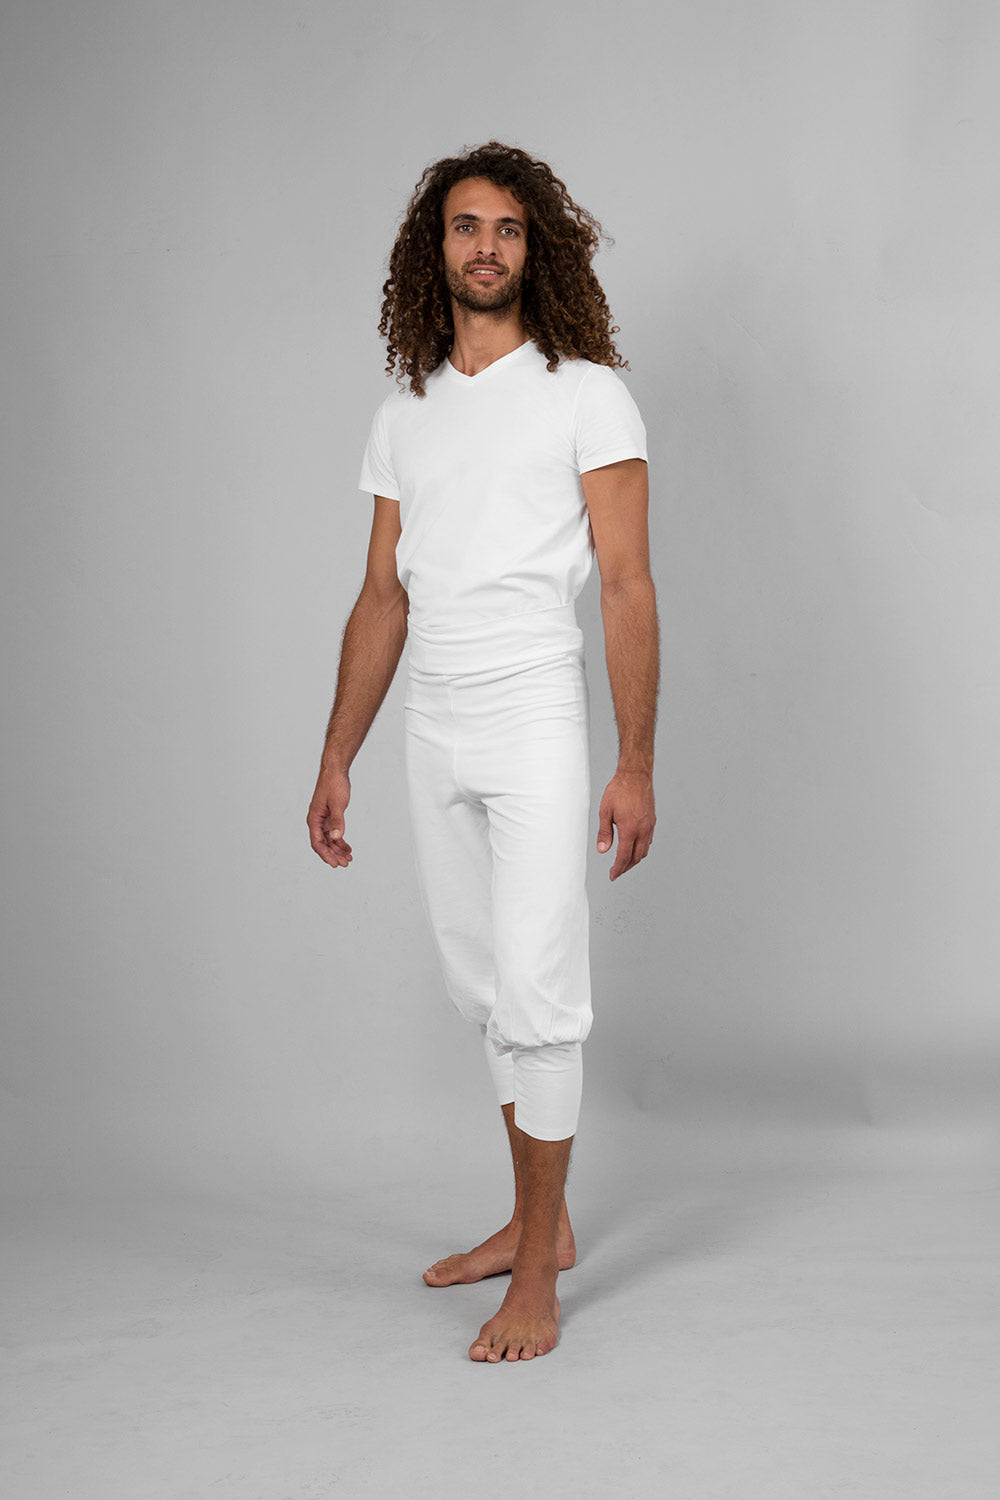 2DXuixsh Men Dress Suits 3 Pieces Men Pieces Cotton Linen Set Henley Shirt  Long Sleeve and Casual Beach Pants Summer Yoga Outfits Suit Pin Men White  Xl - Walmart.com